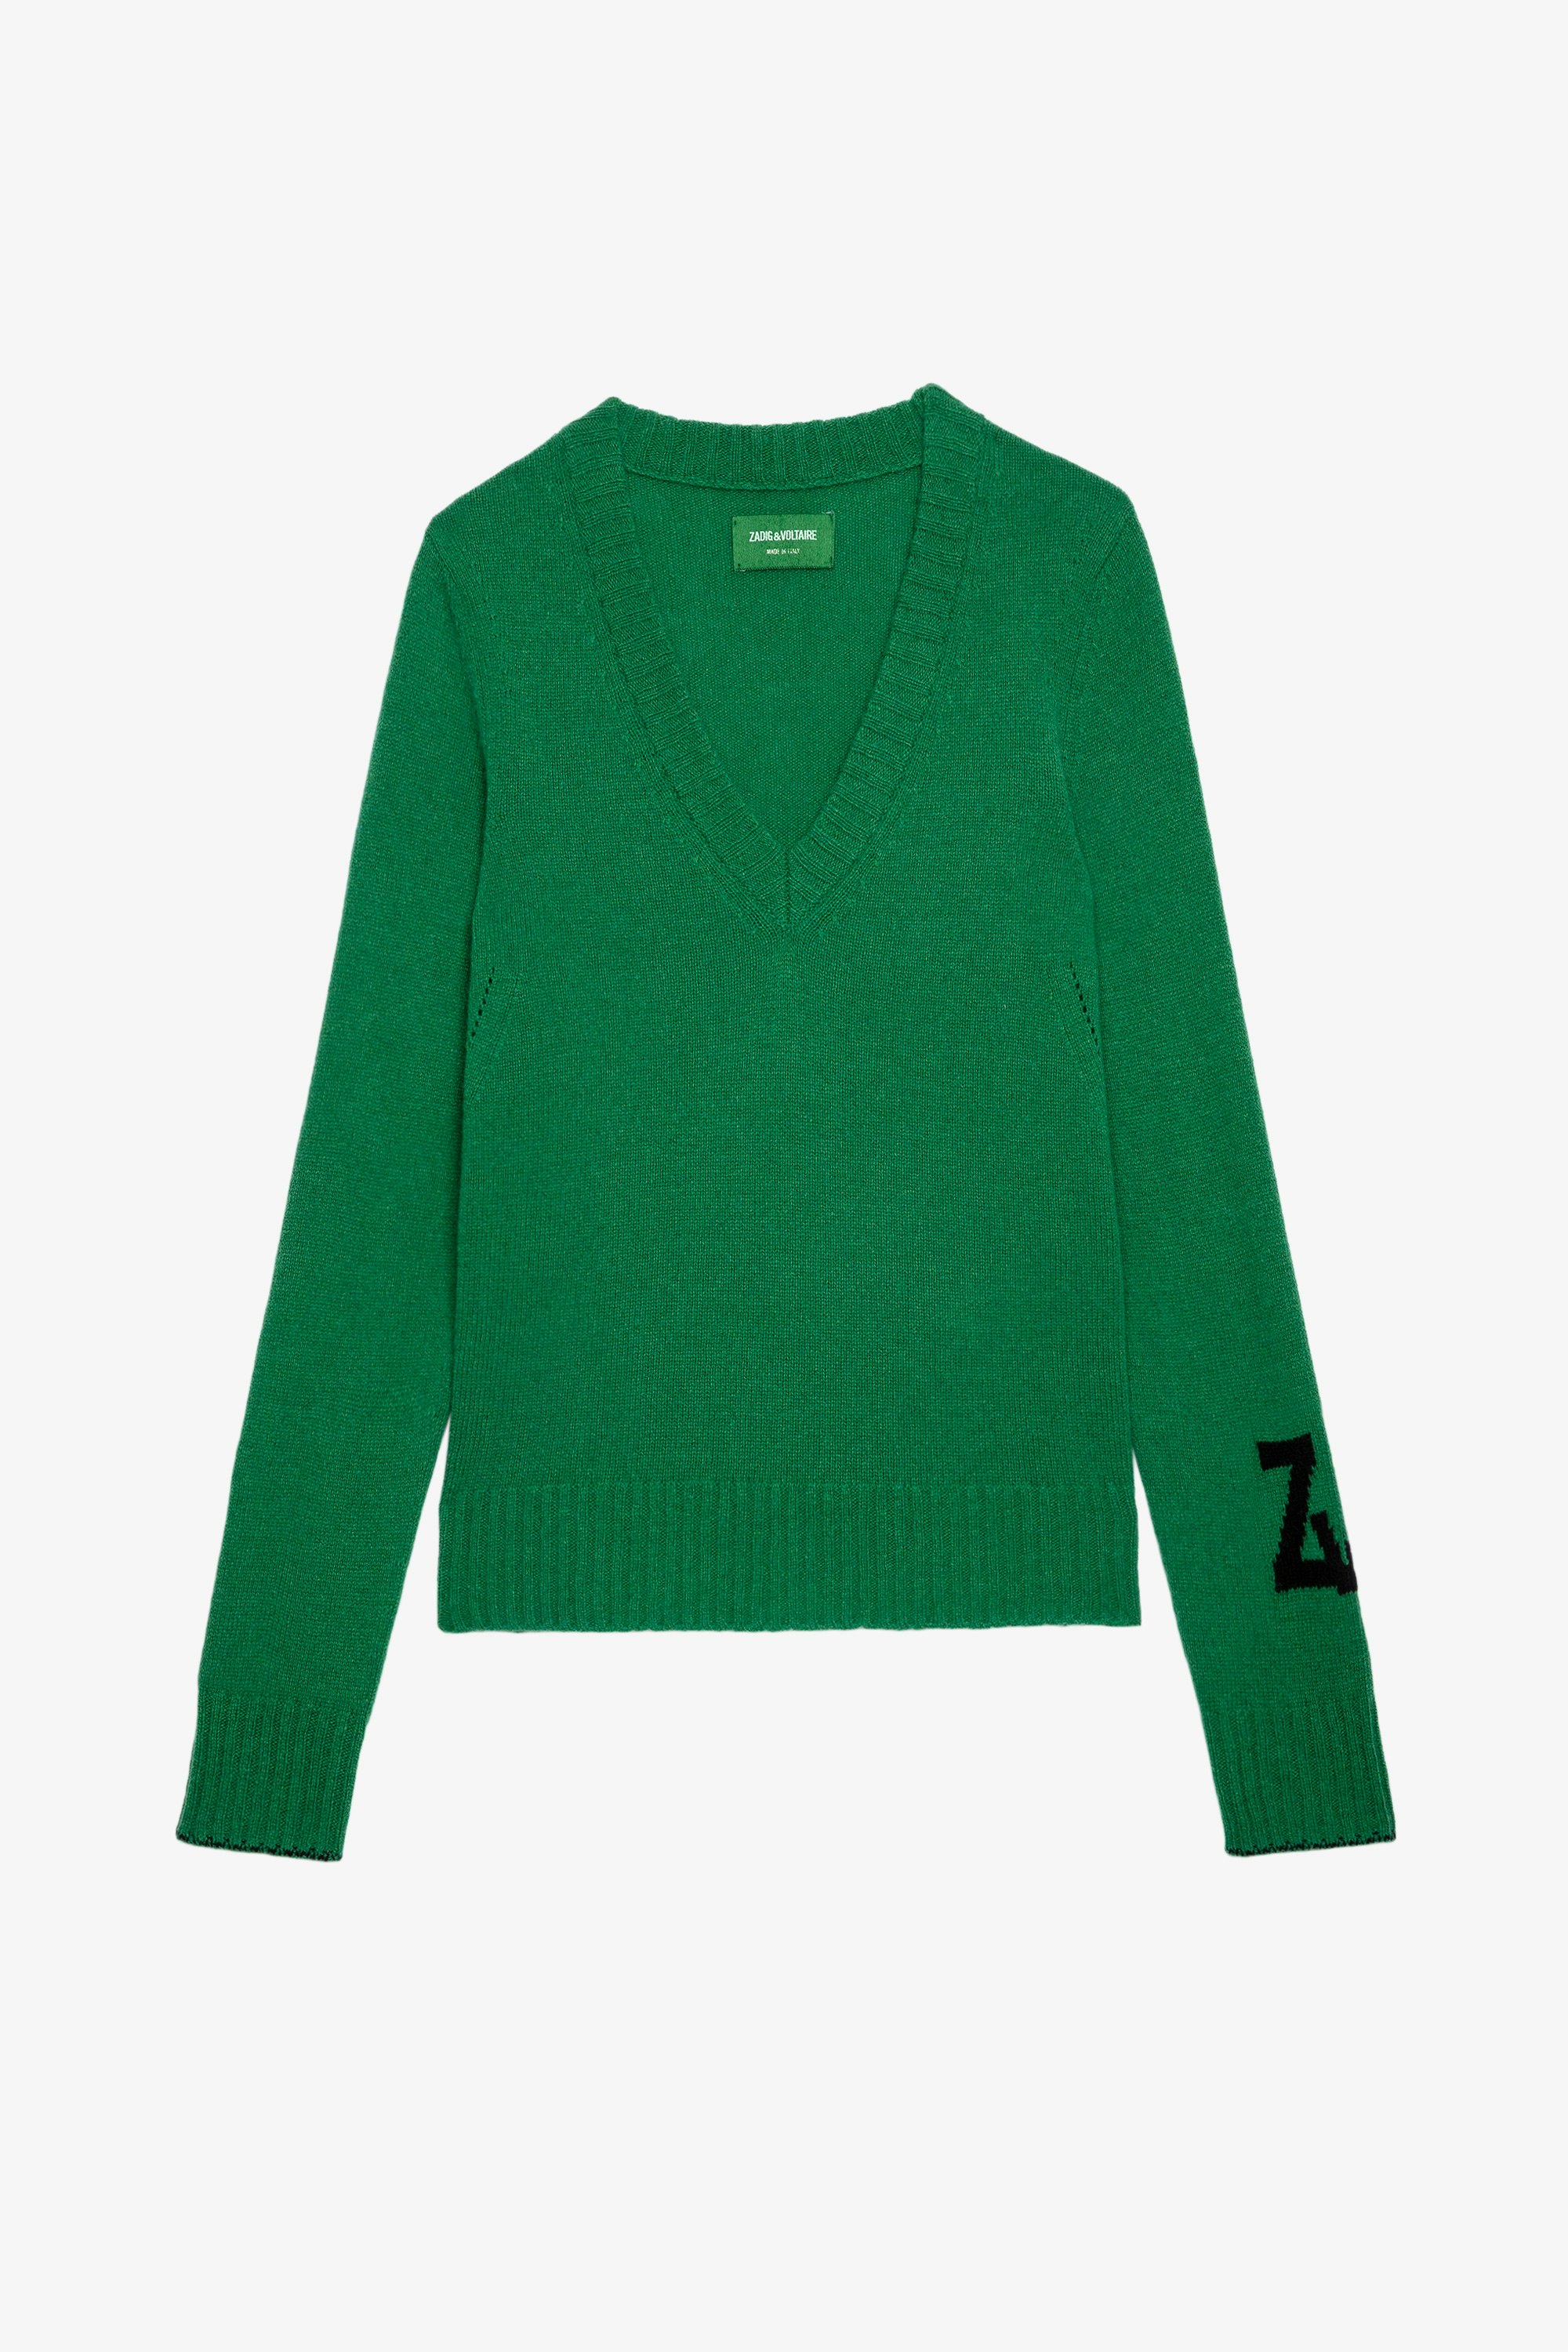 Maglione Sourca Maglia in tricot verde con scollo a V donna